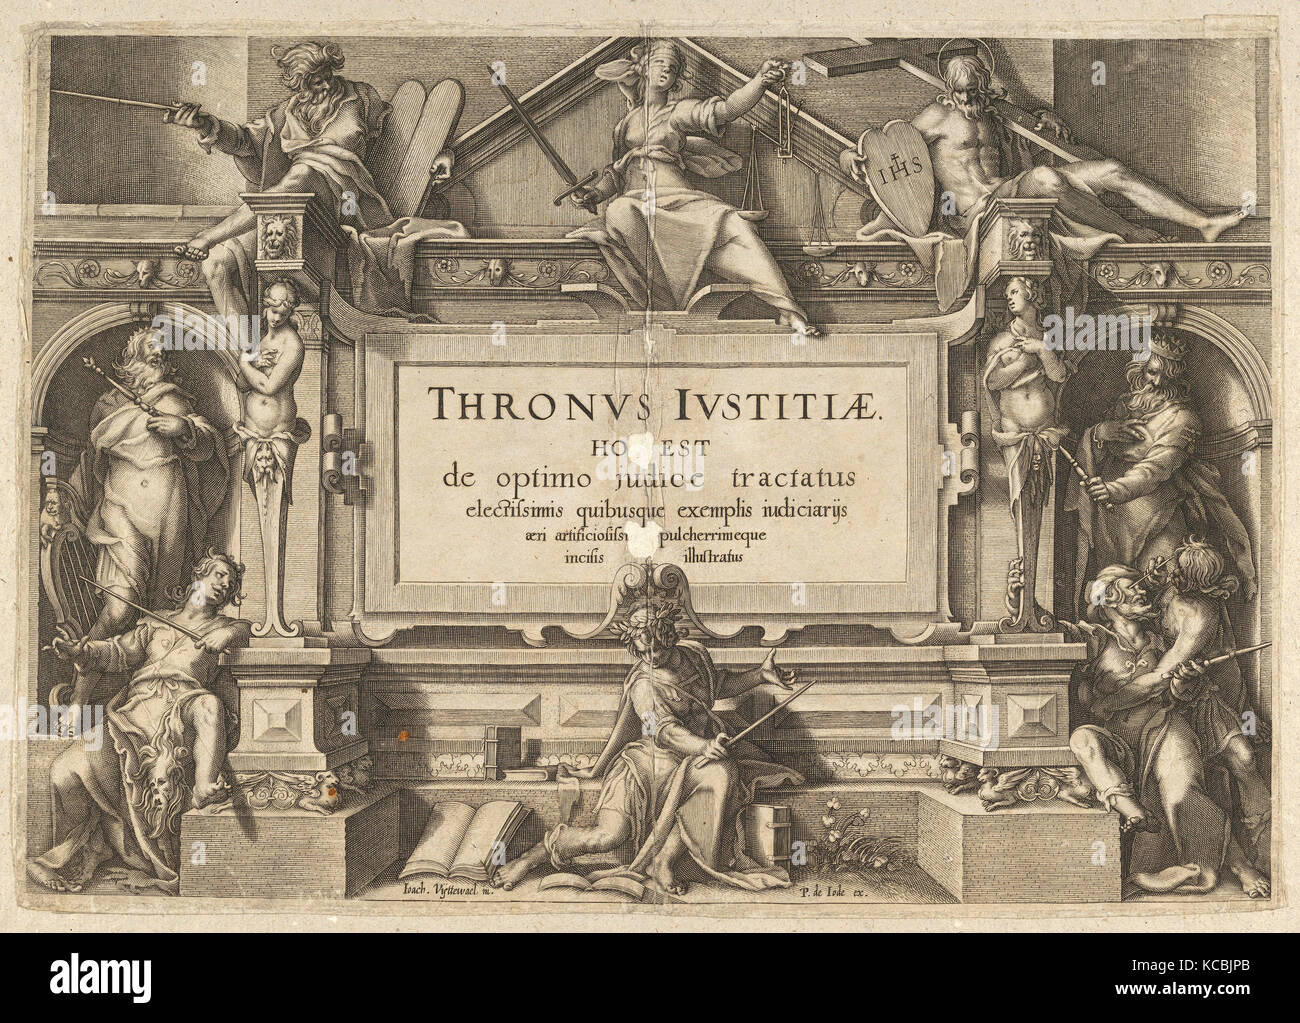 Dessins et gravures, Imprimer, Page de titre situé dans un cadre architectural avec le Christ, et figures allégoriques de Thronus Justitiae Banque D'Images